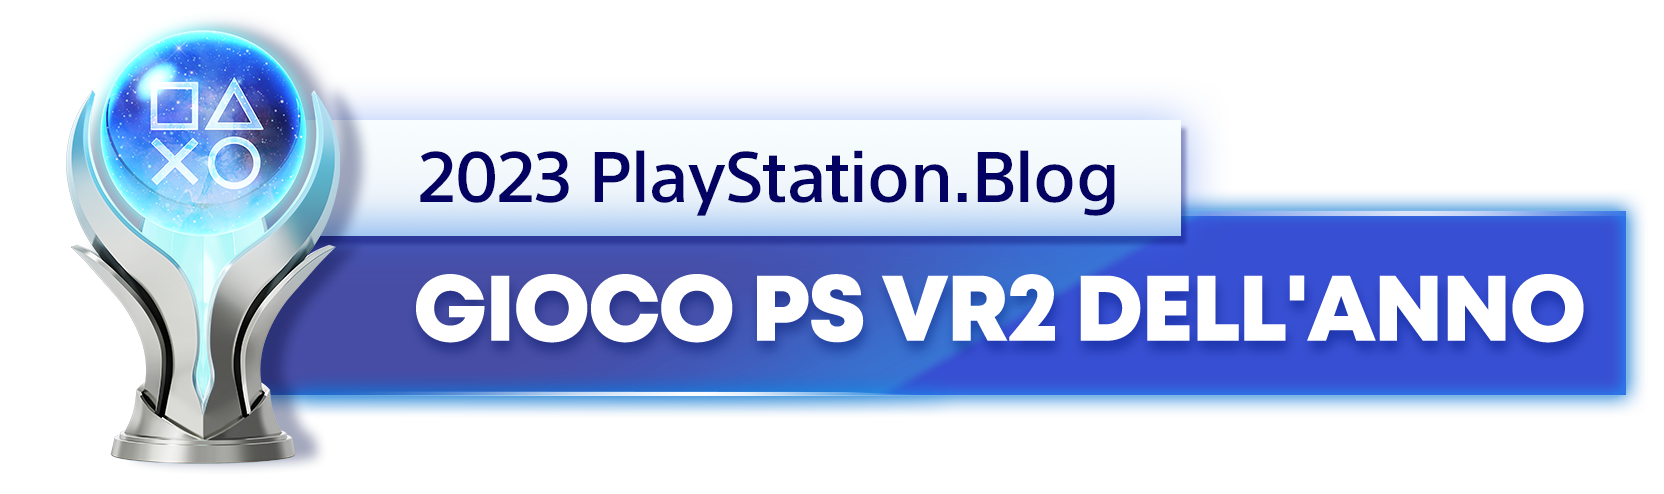  "Vincitore del trofeo platino per il titolo di Gioco PS VR2 dell'anno 2023 del PlayStation.Blog"